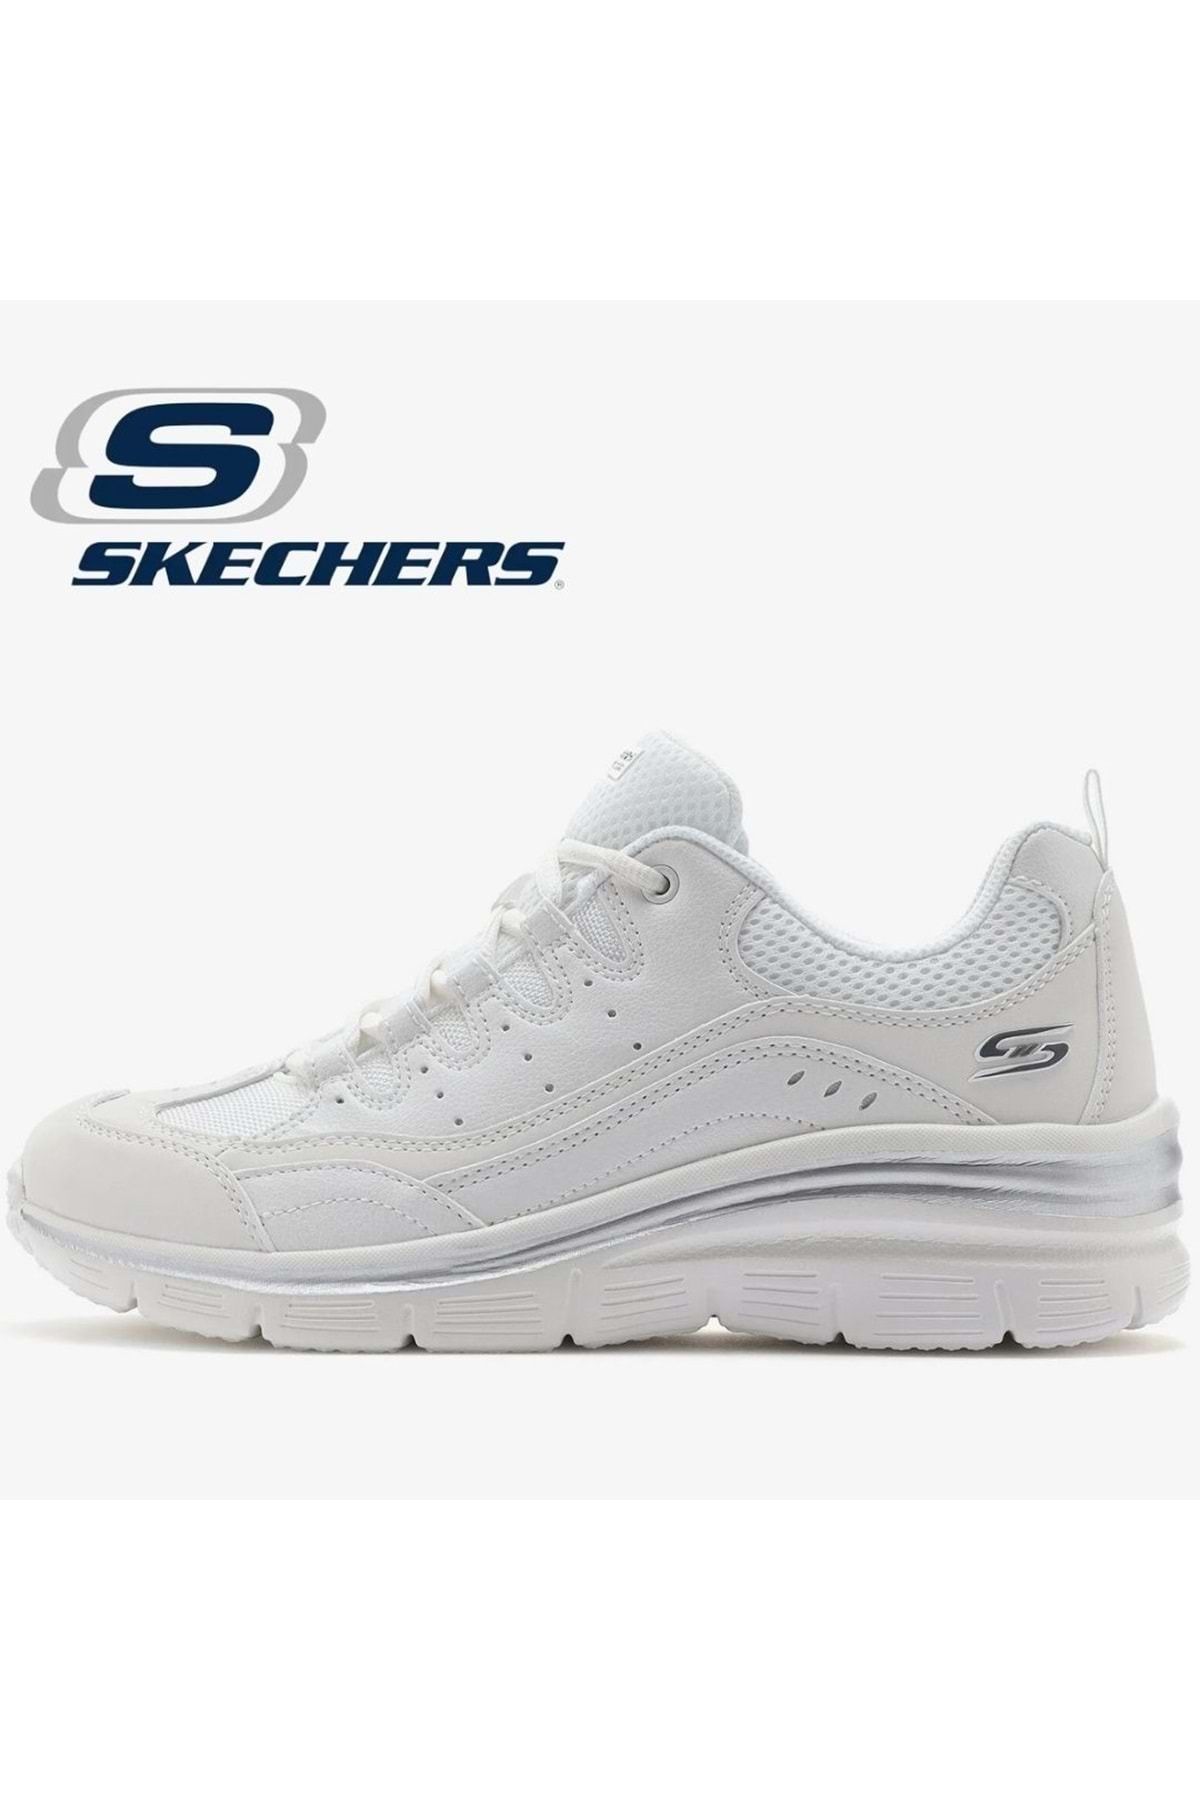 Skechers Fashion Fit 896295tk Sneaker Kadın Spor Ayakkabı Beyaz